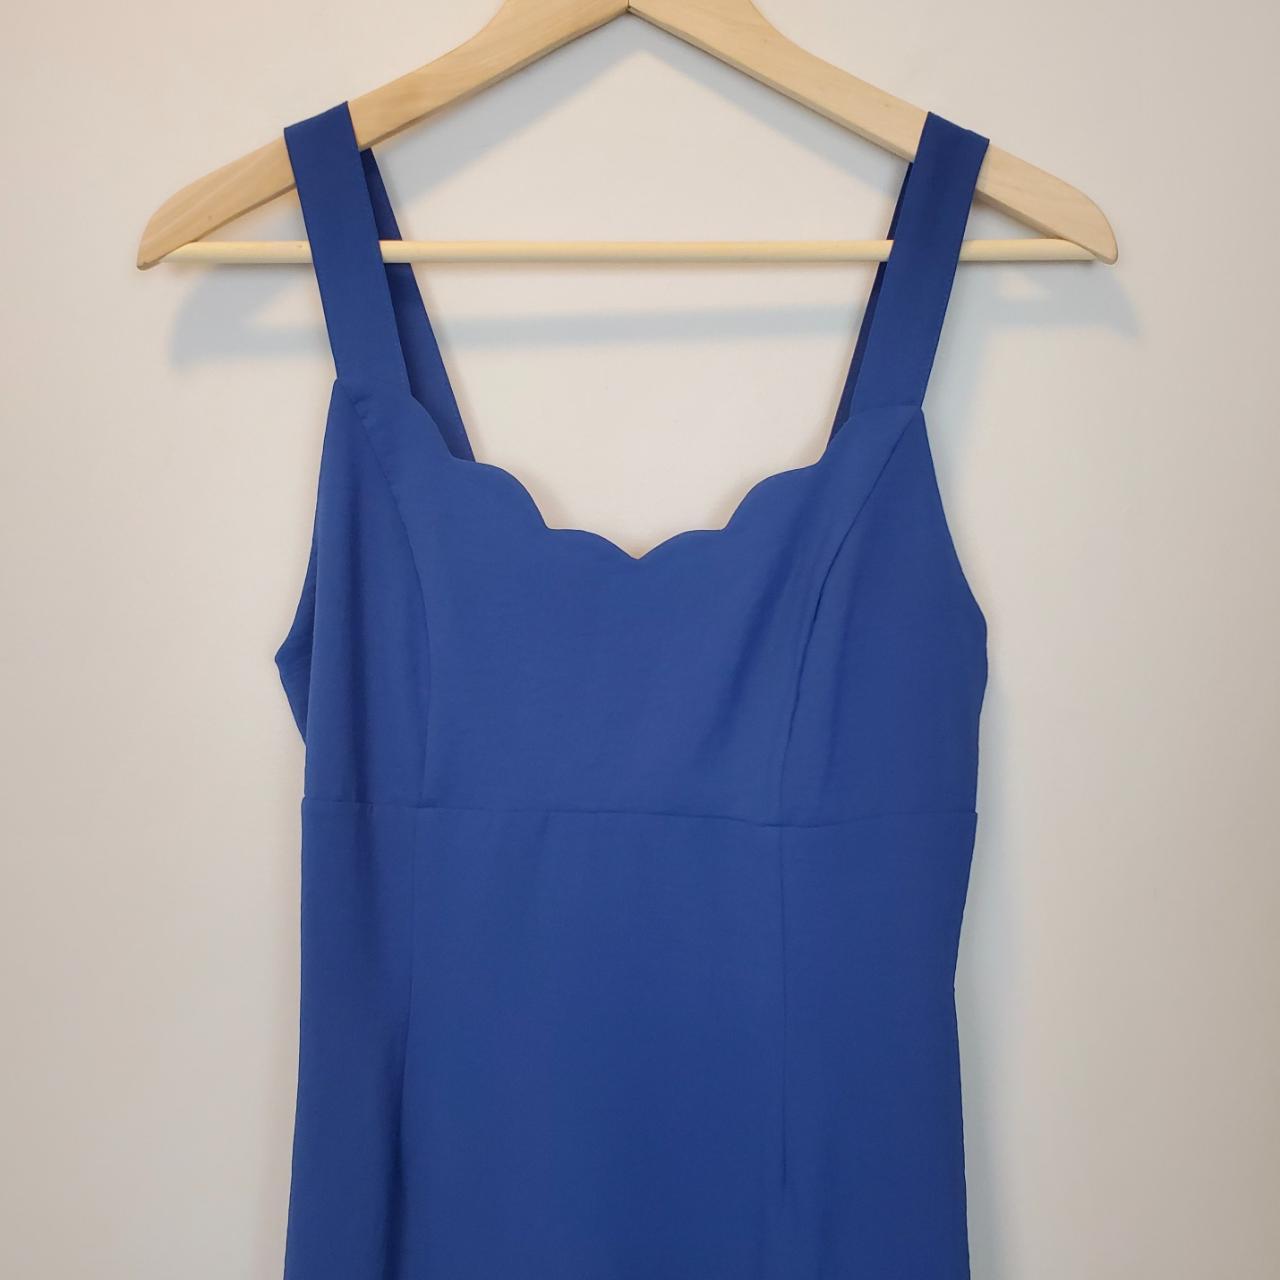 Altard State Cute Blue Mini Dress Pre-loved Great... - Depop